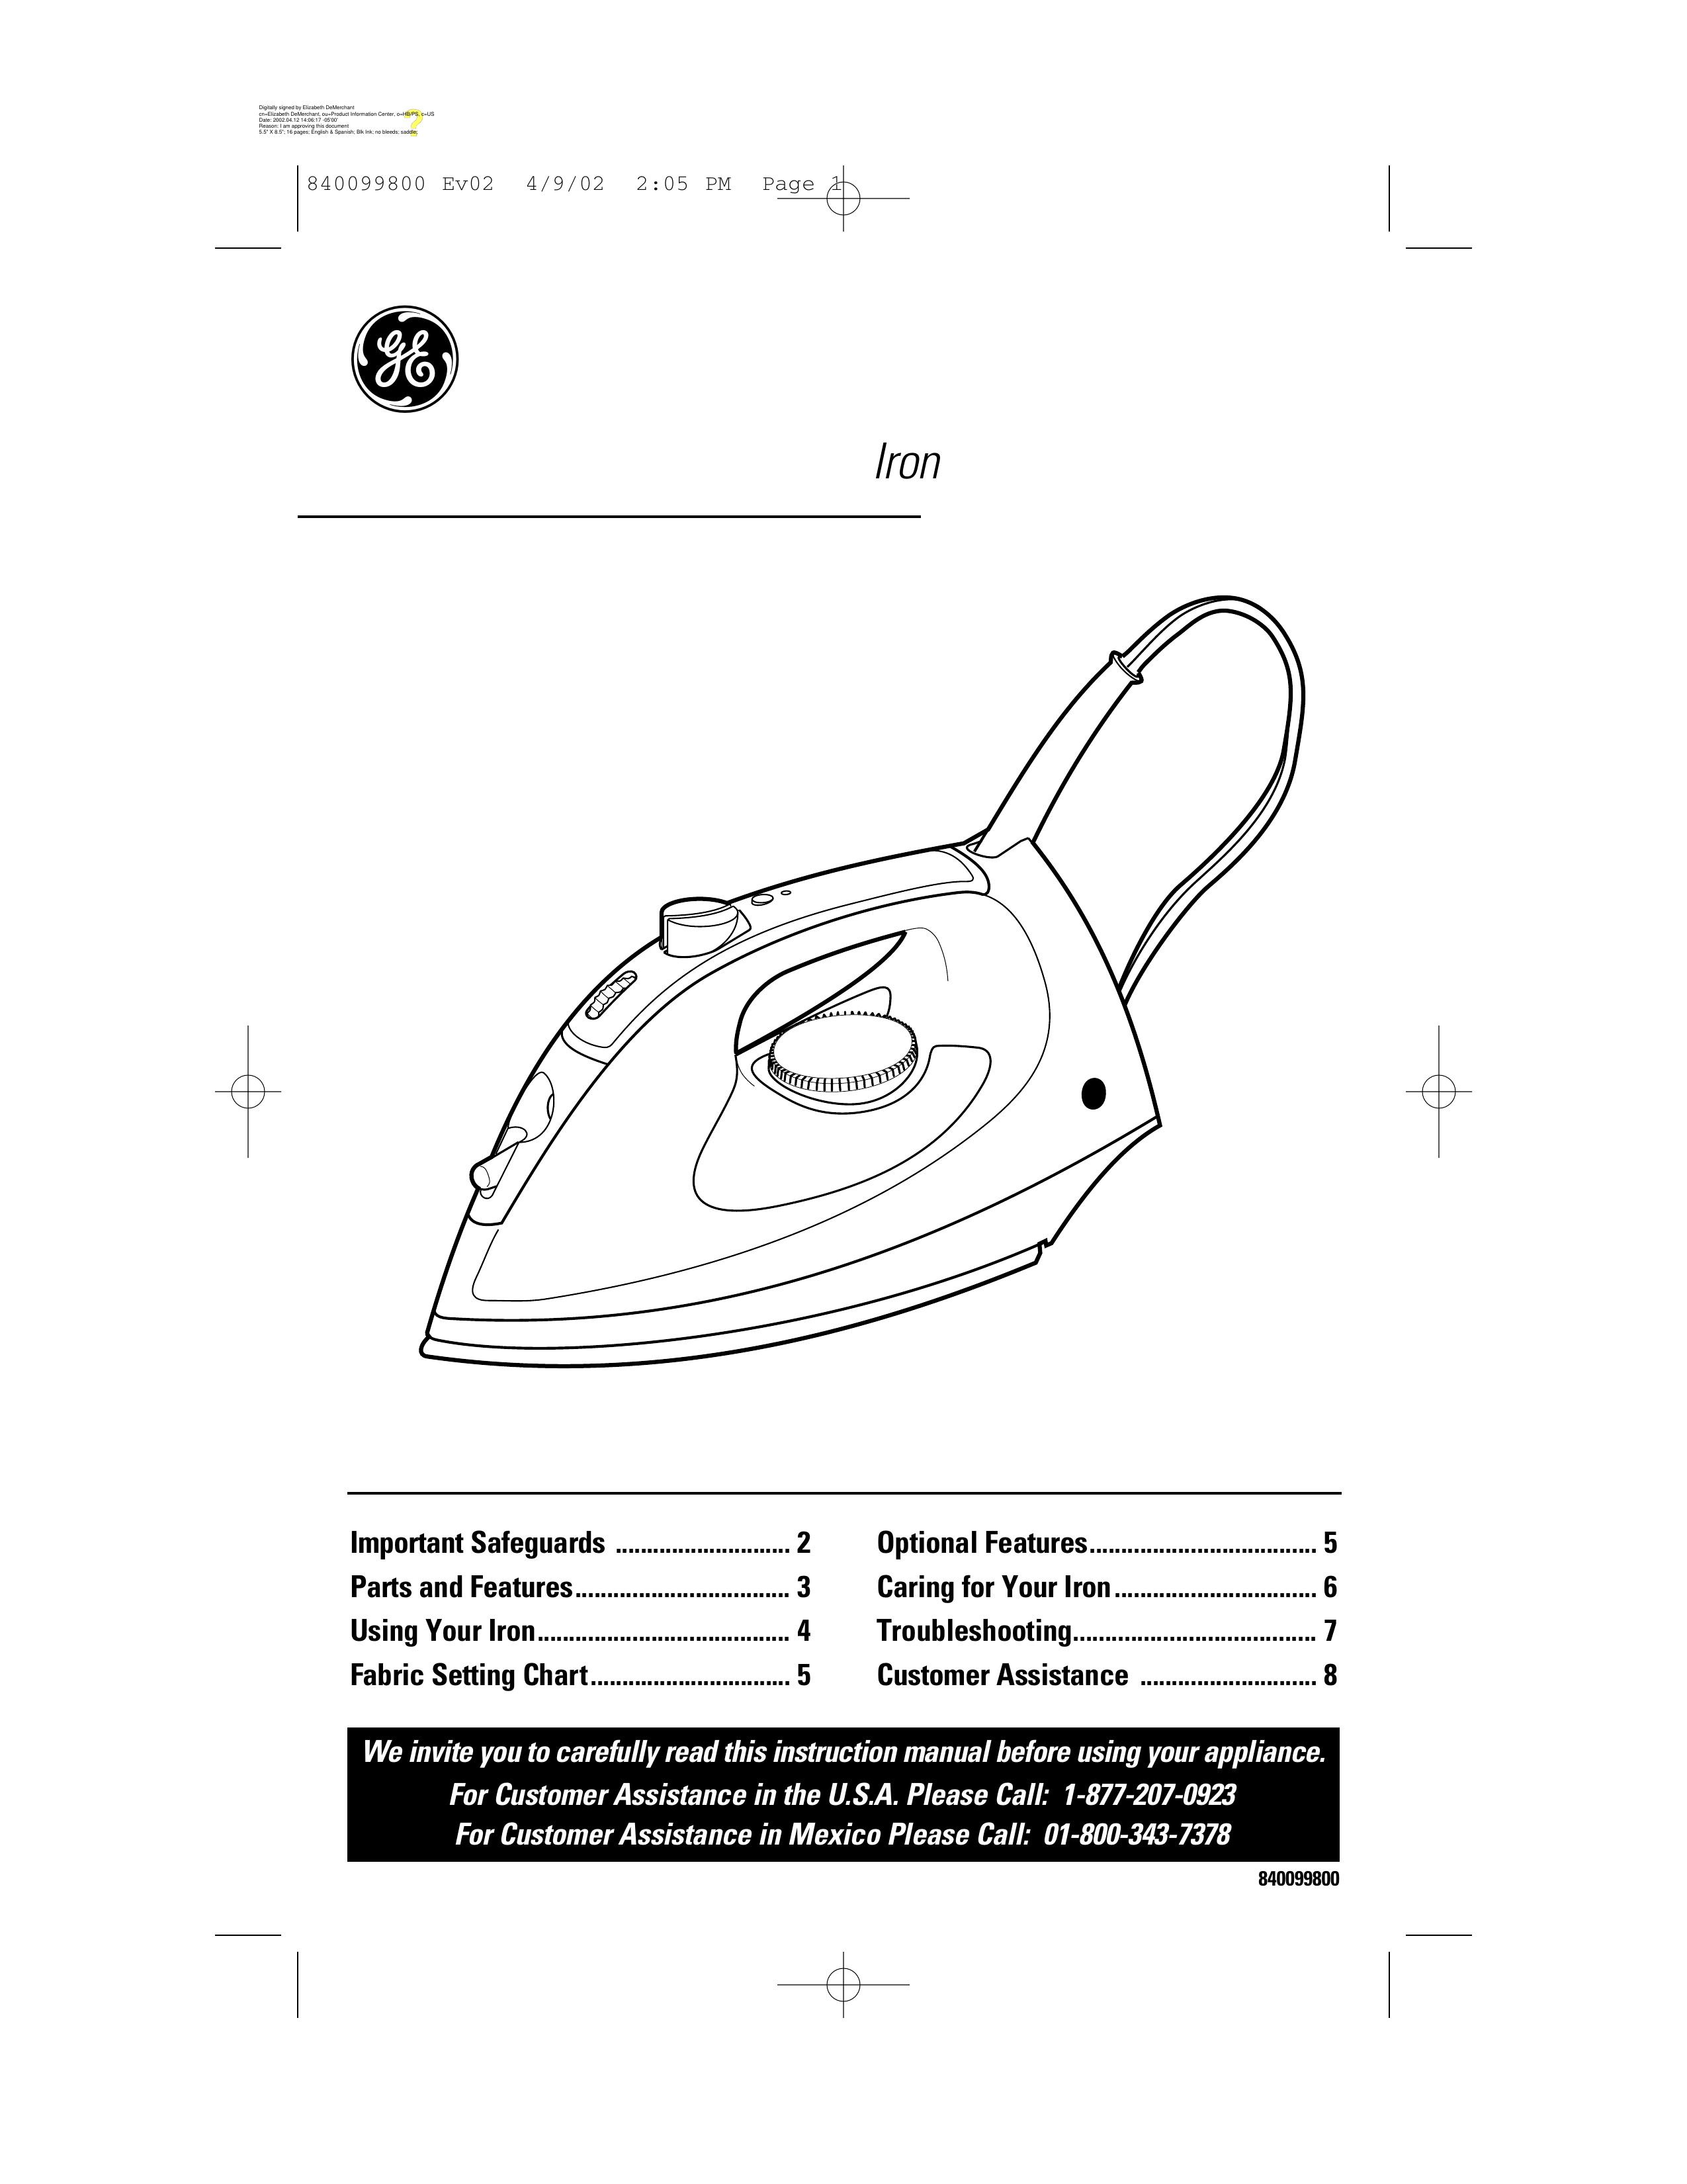 GE 840099800 Iron User Manual